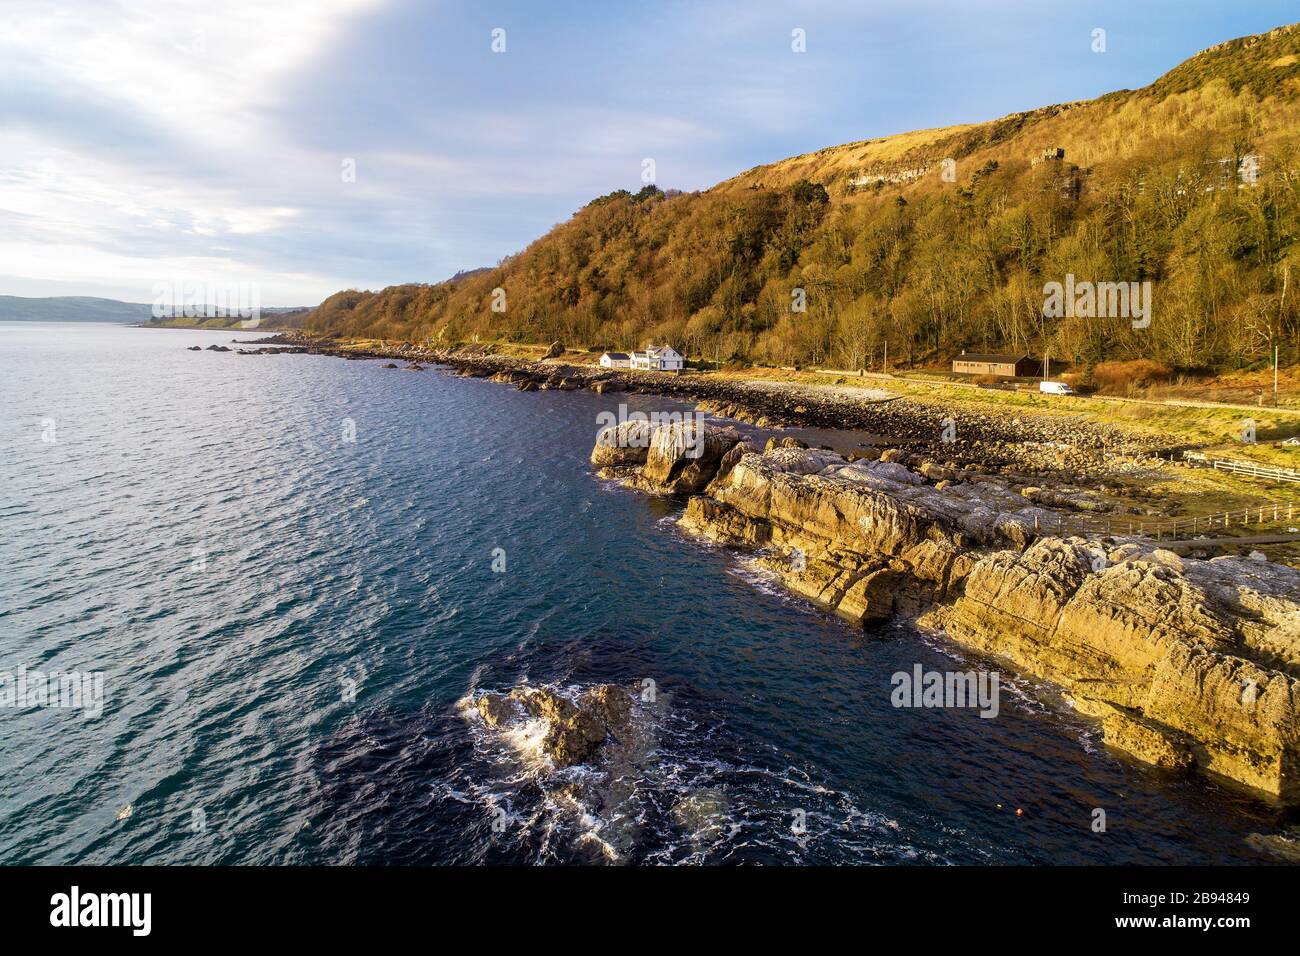 Irlanda del Nord, Regno Unito. Atlantic Coast, Garron Point Rocks e Antrim Coast Road, noto anche come Causeway Coastal Route. Una delle strade costiere più panoramiche Foto Stock